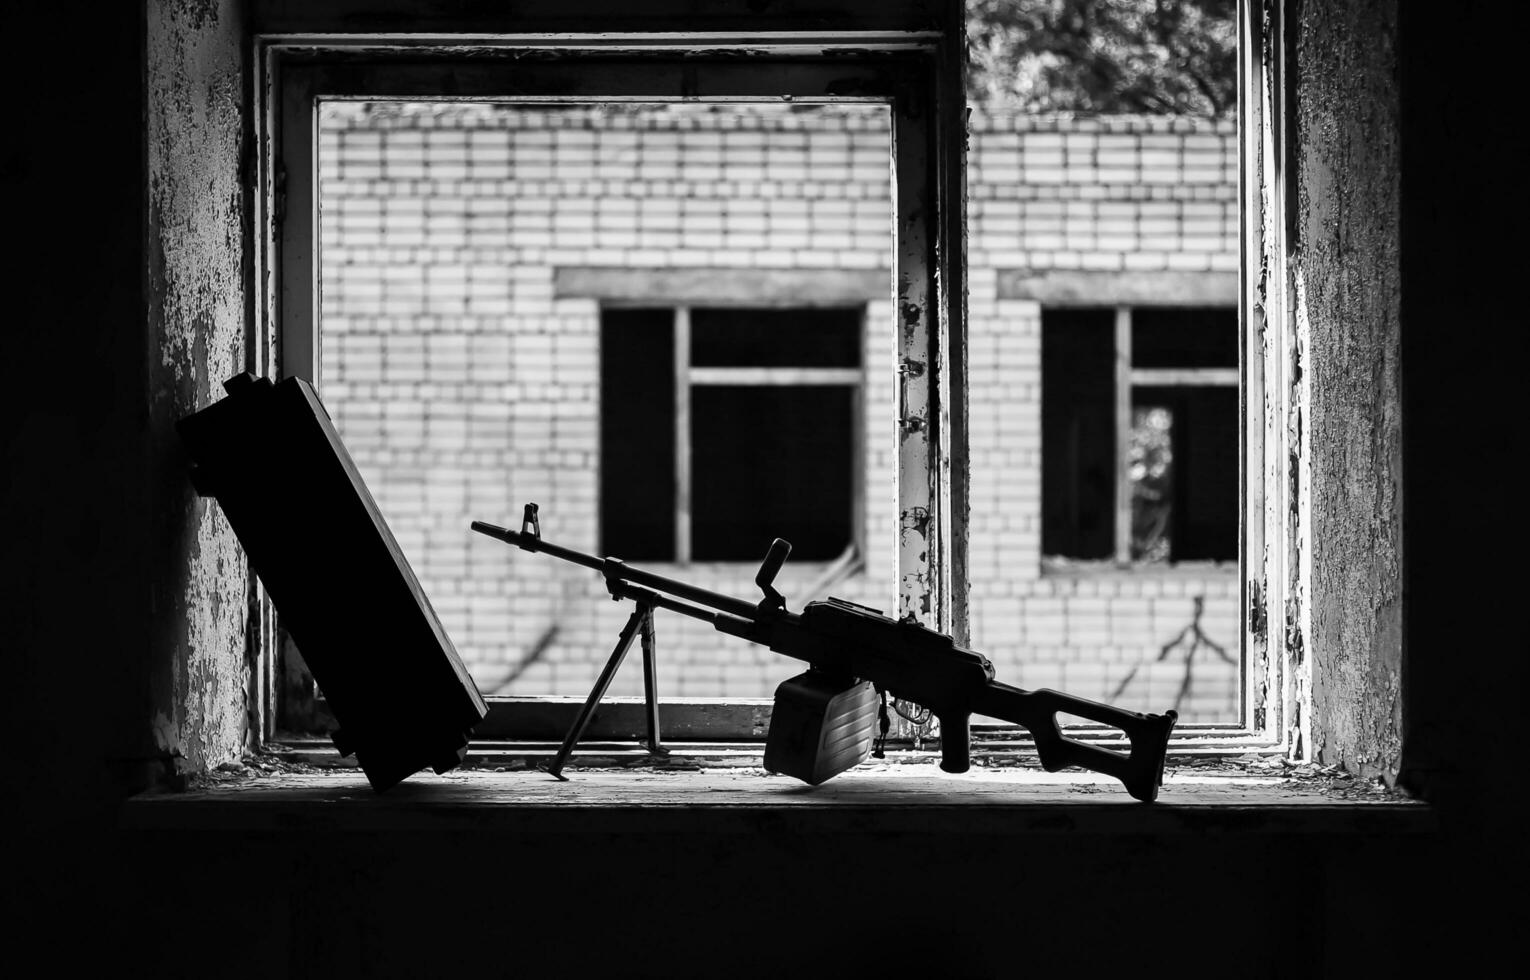 metralhadora em treinamento militar, no contexto de uma base militar quebrada foto